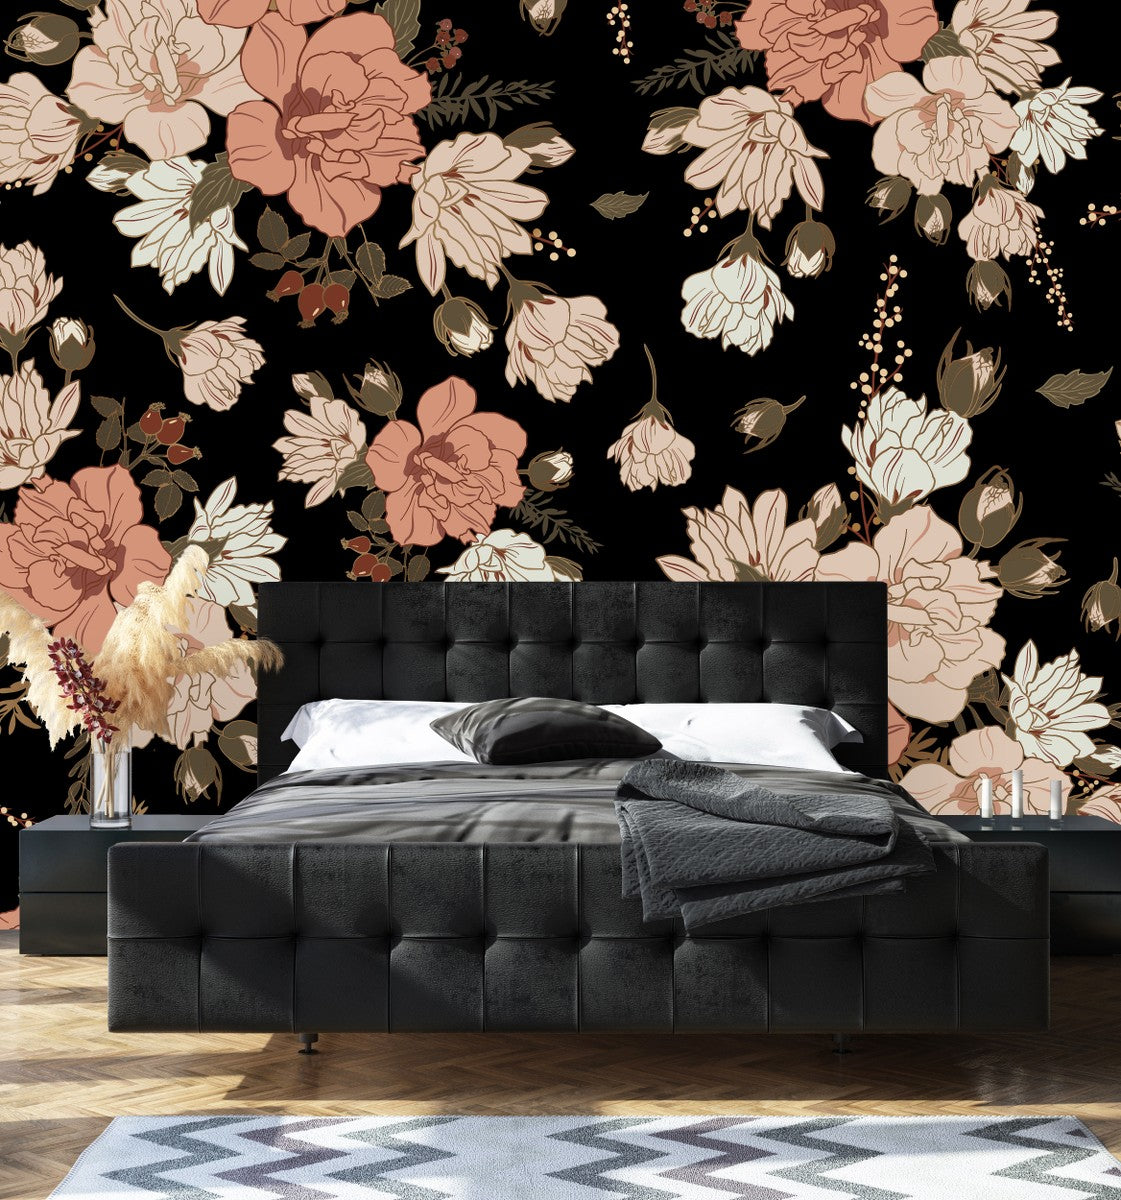 11,656 Black Wallpaper Bedroom Images, Stock Photos & Vectors | Shutterstock